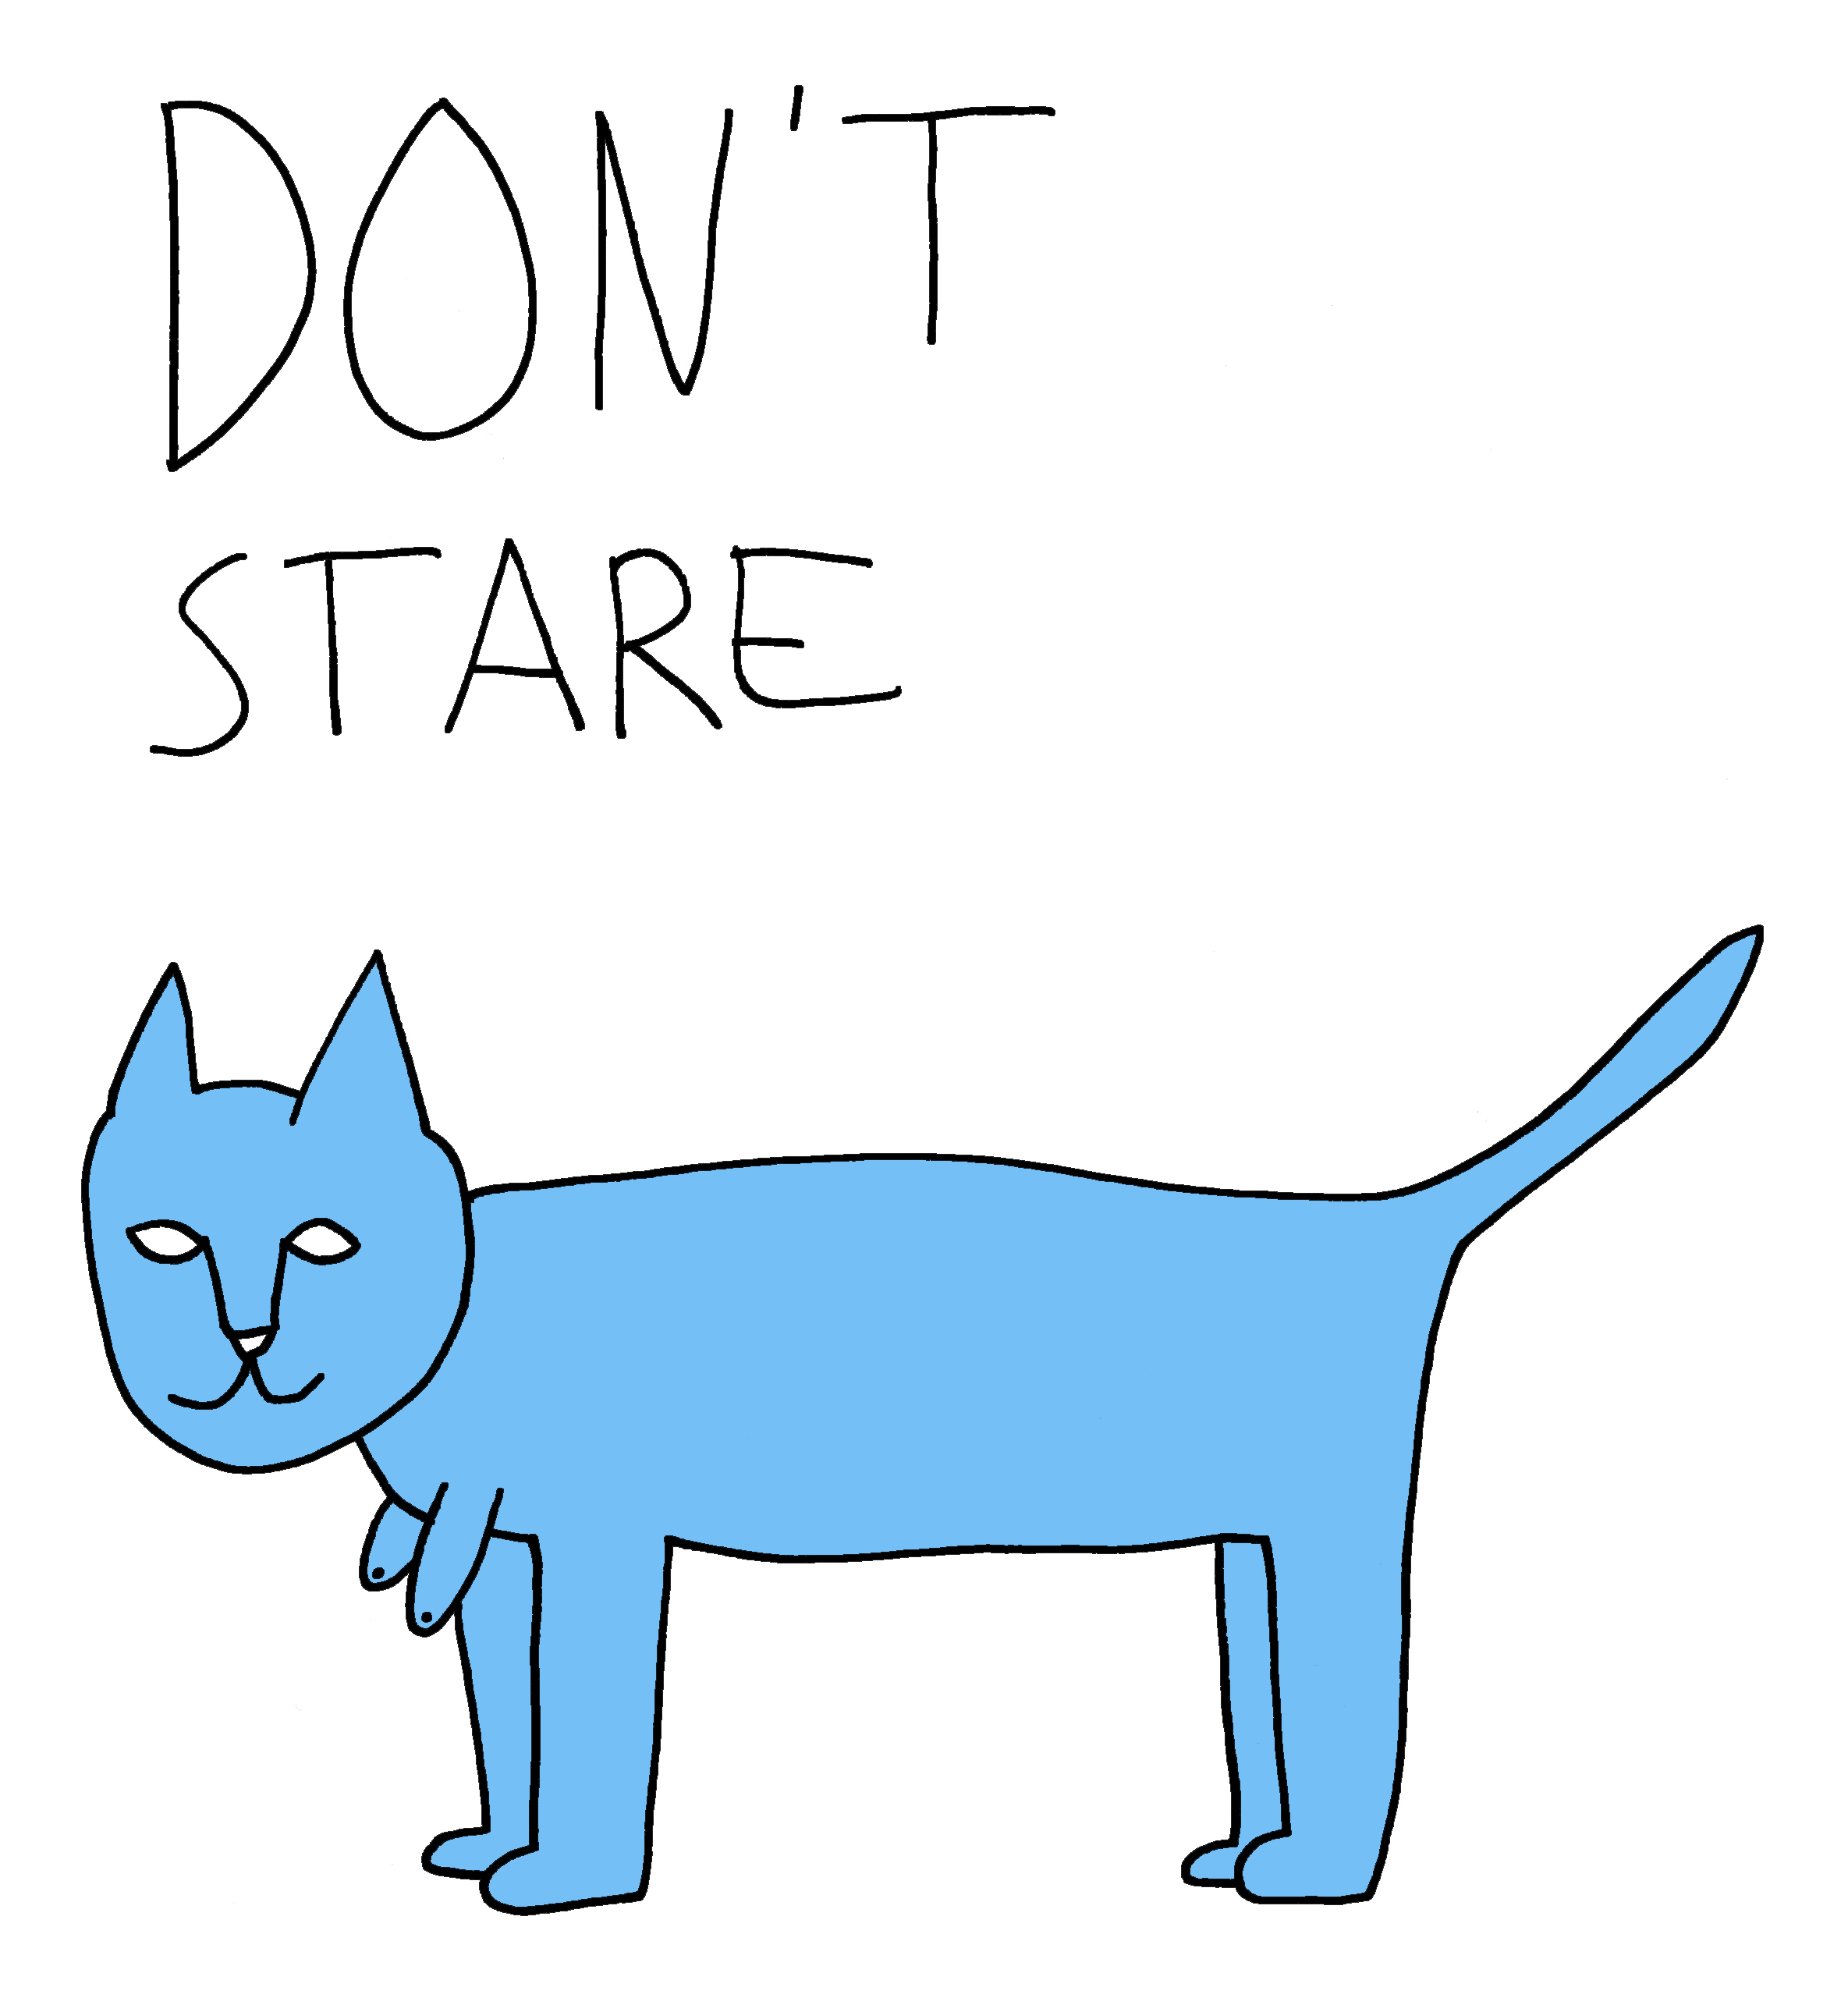 "Don't Stare"